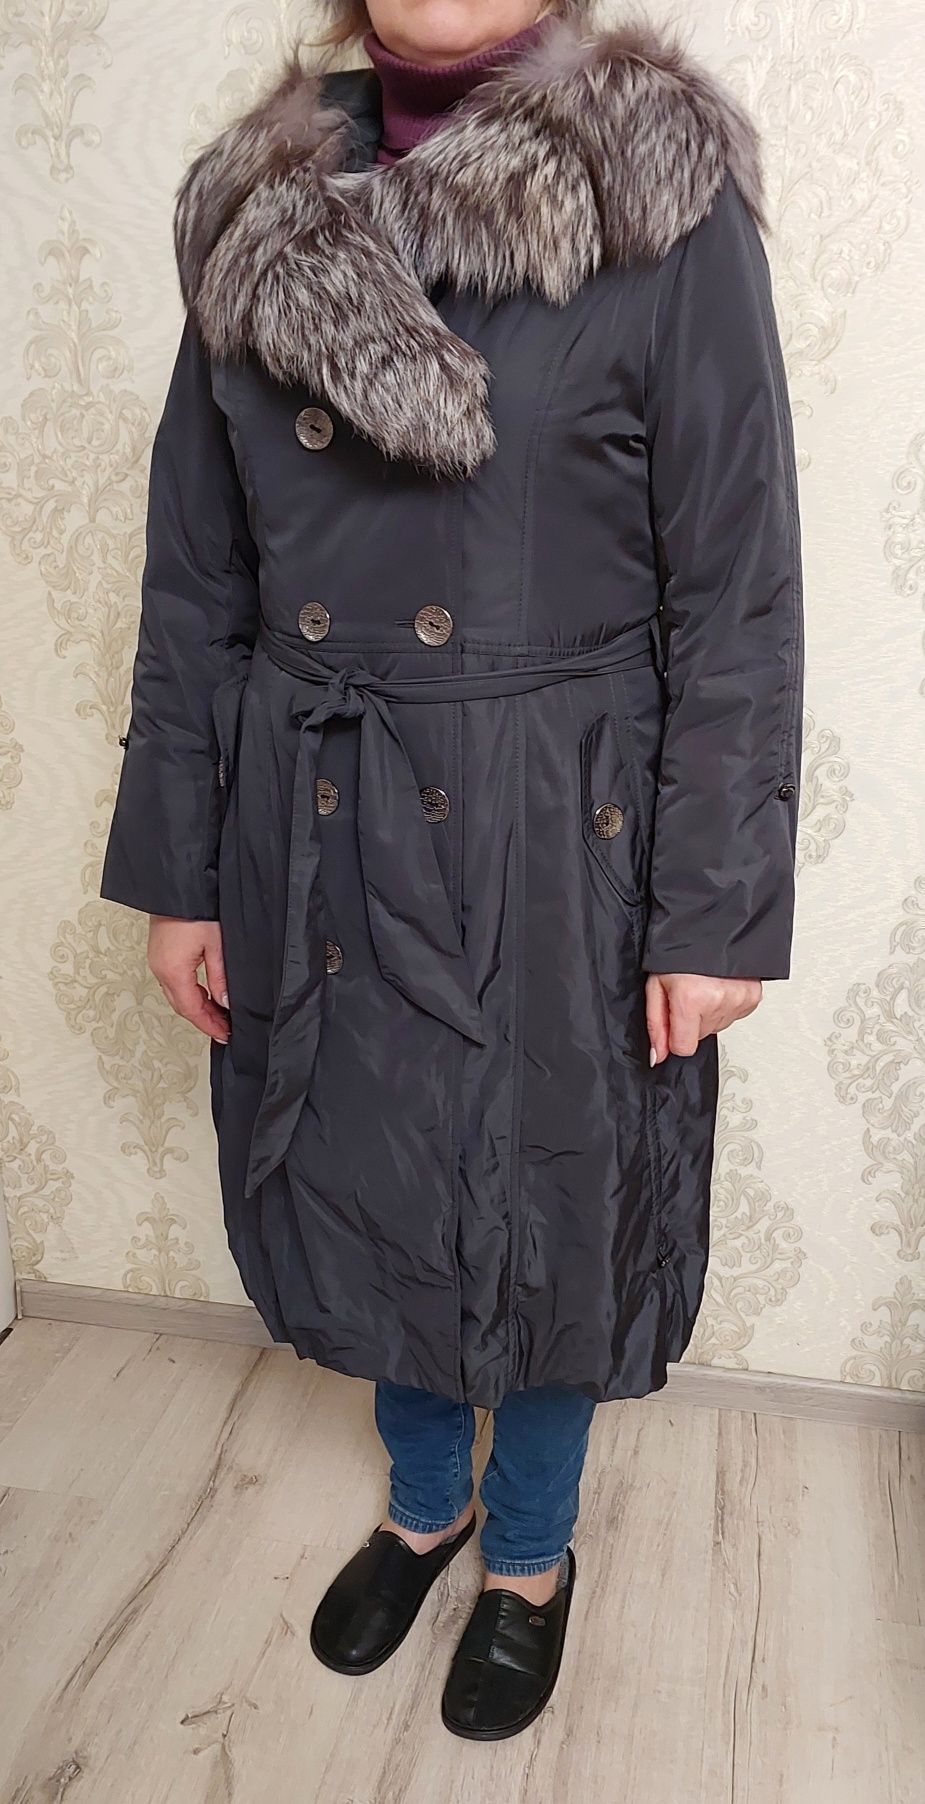 Зимнее меховое пальто 52р. , зимняя курточка, шуба